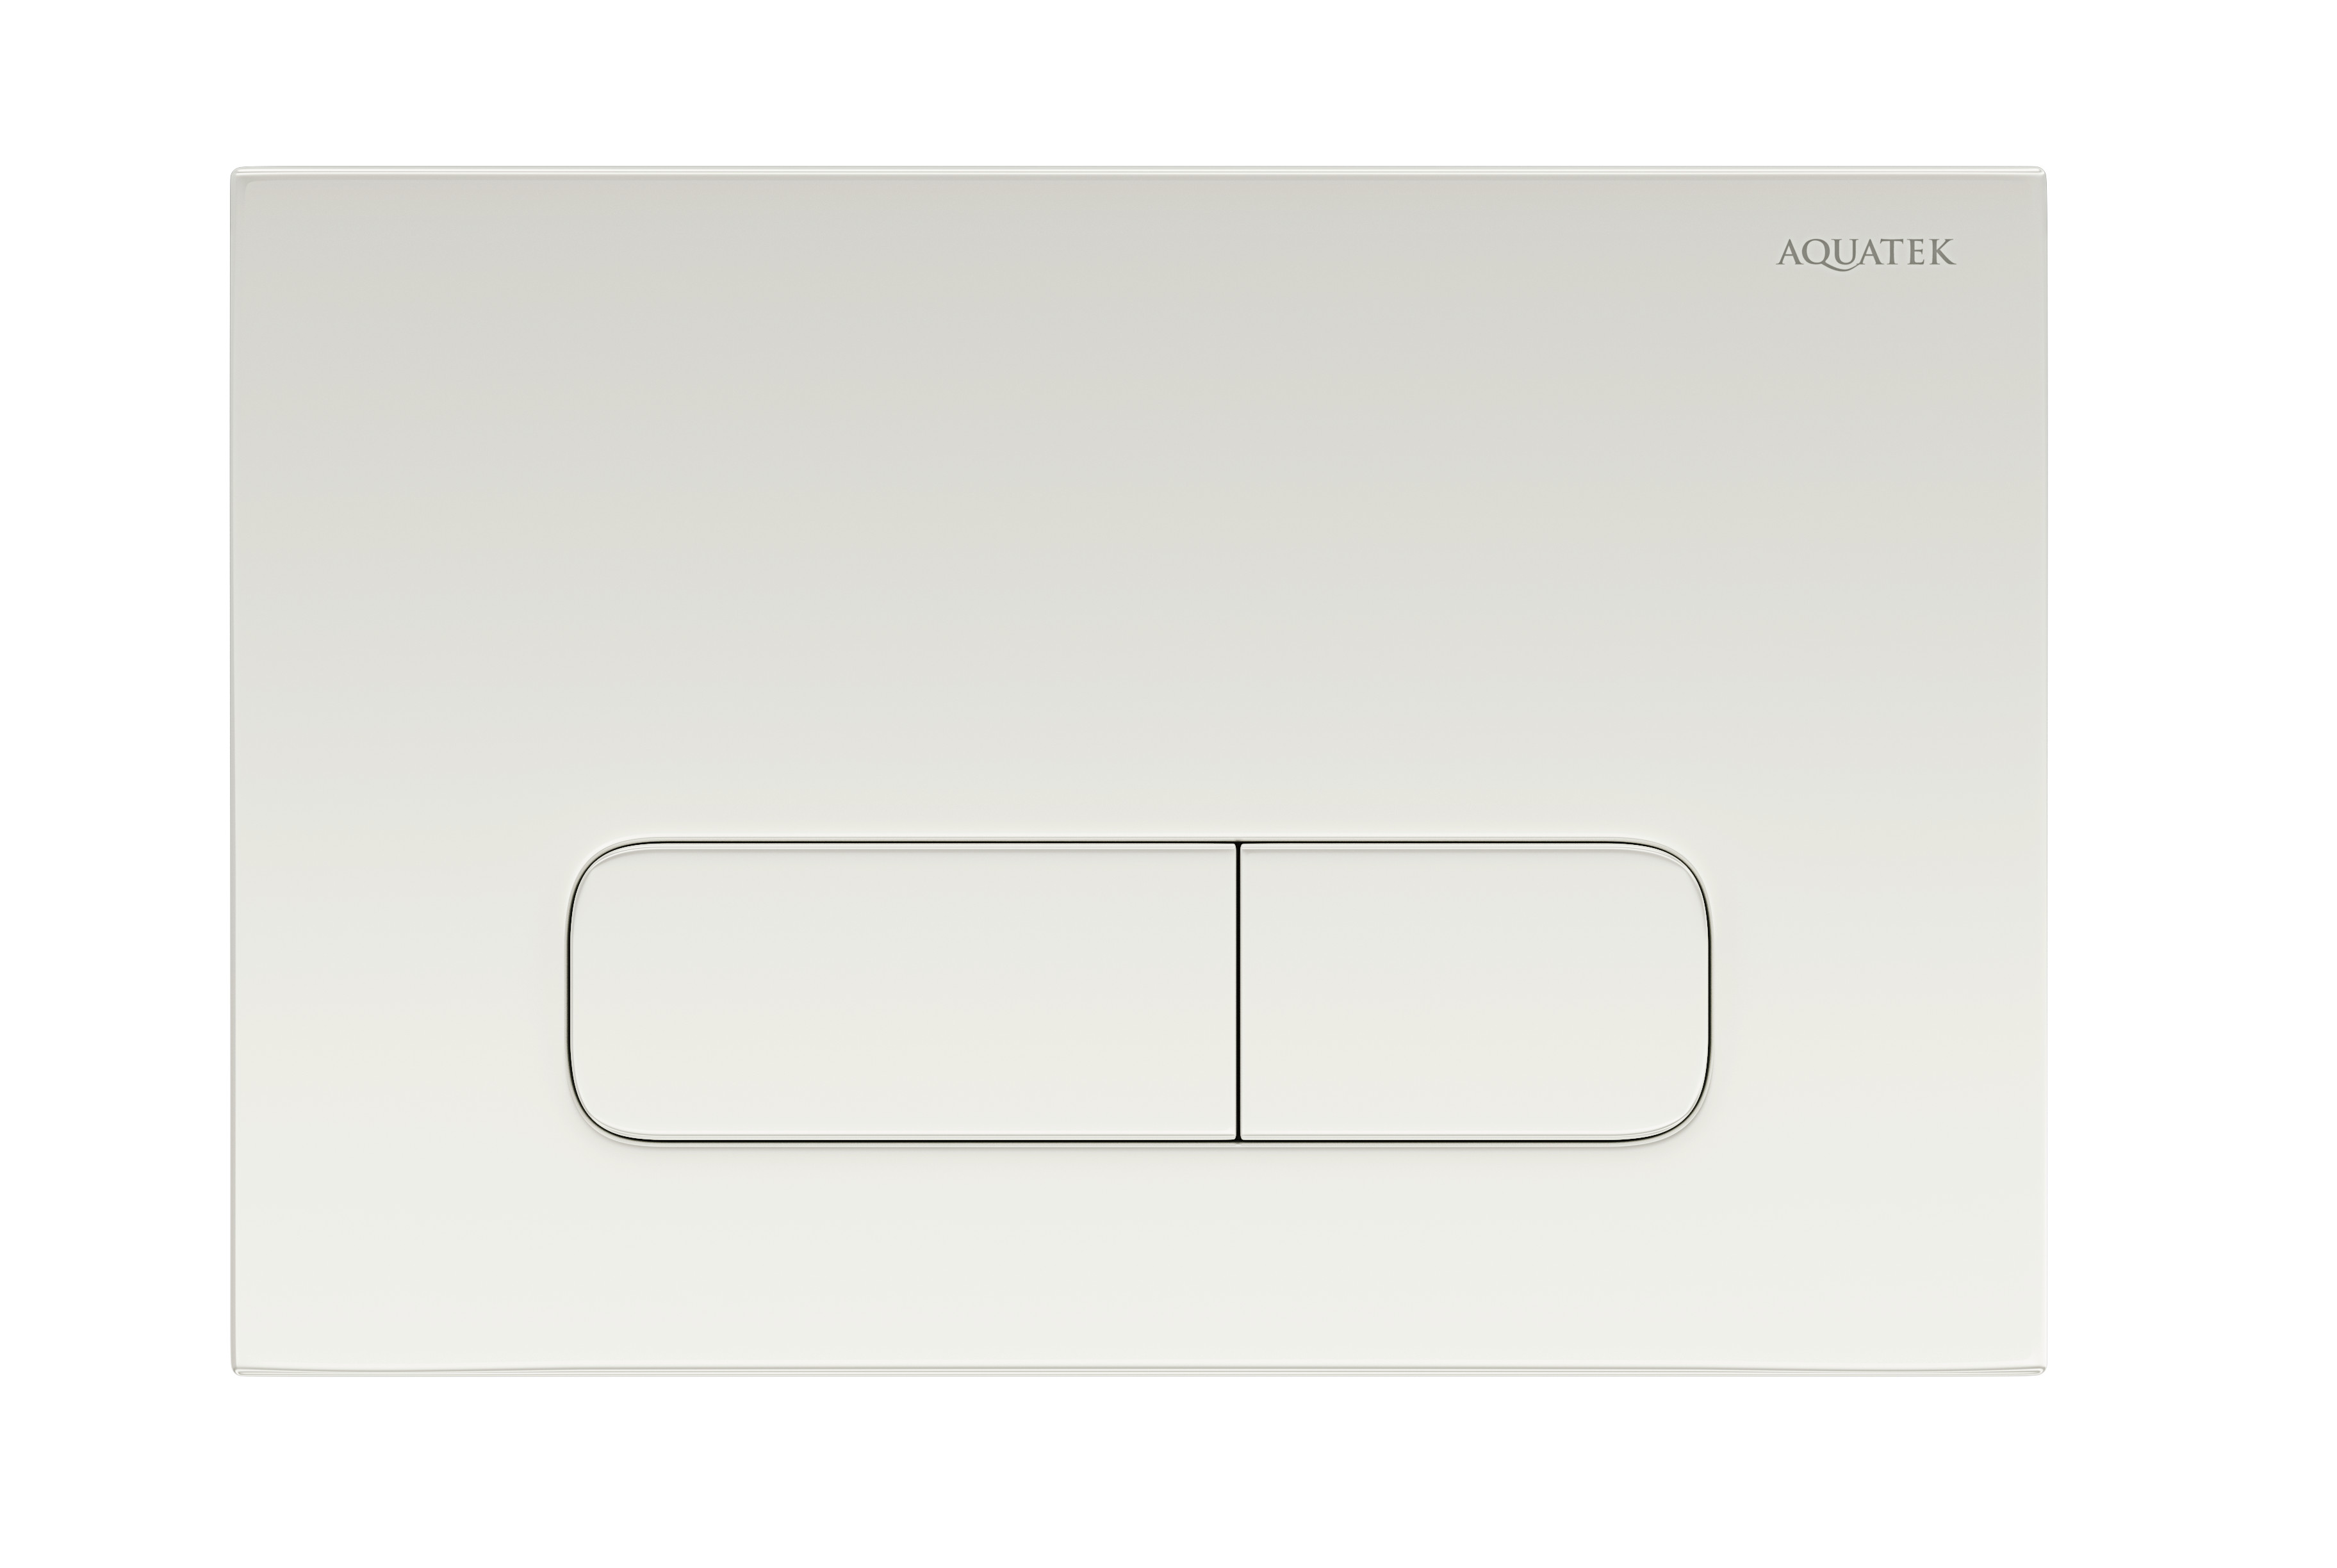 KDI-0000013 (002a) панель смыва белая (клавиши прямоугольные). Schwab 570-8464 кнопка для инсталляции. Schwab 570-8464 клавиша для инсталляции. Кнопка смыва Aquatek нержавеющая сталь KDI-0000032 металл. Купить белые кнопки